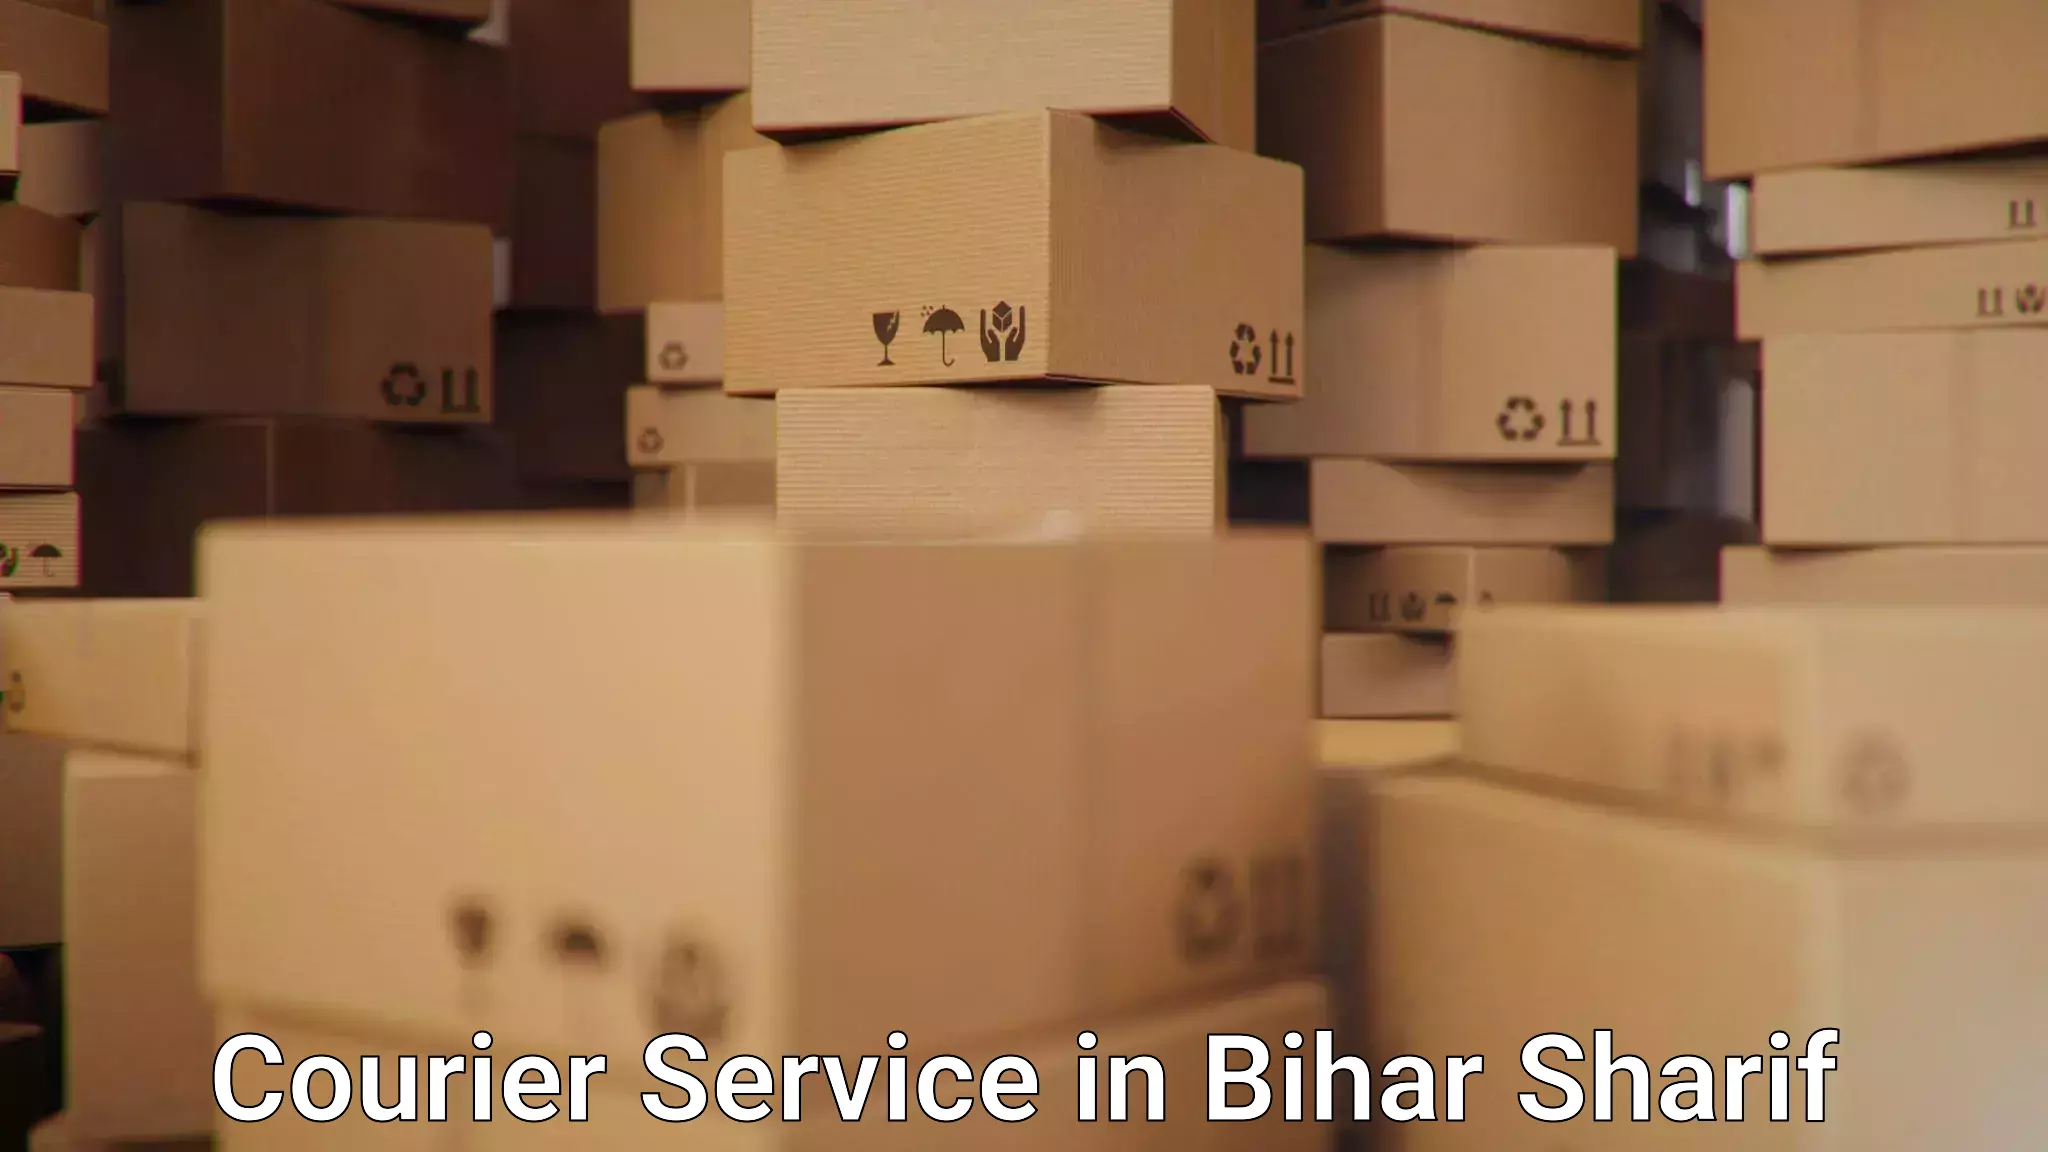 Versatile courier options in Bihar Sharif